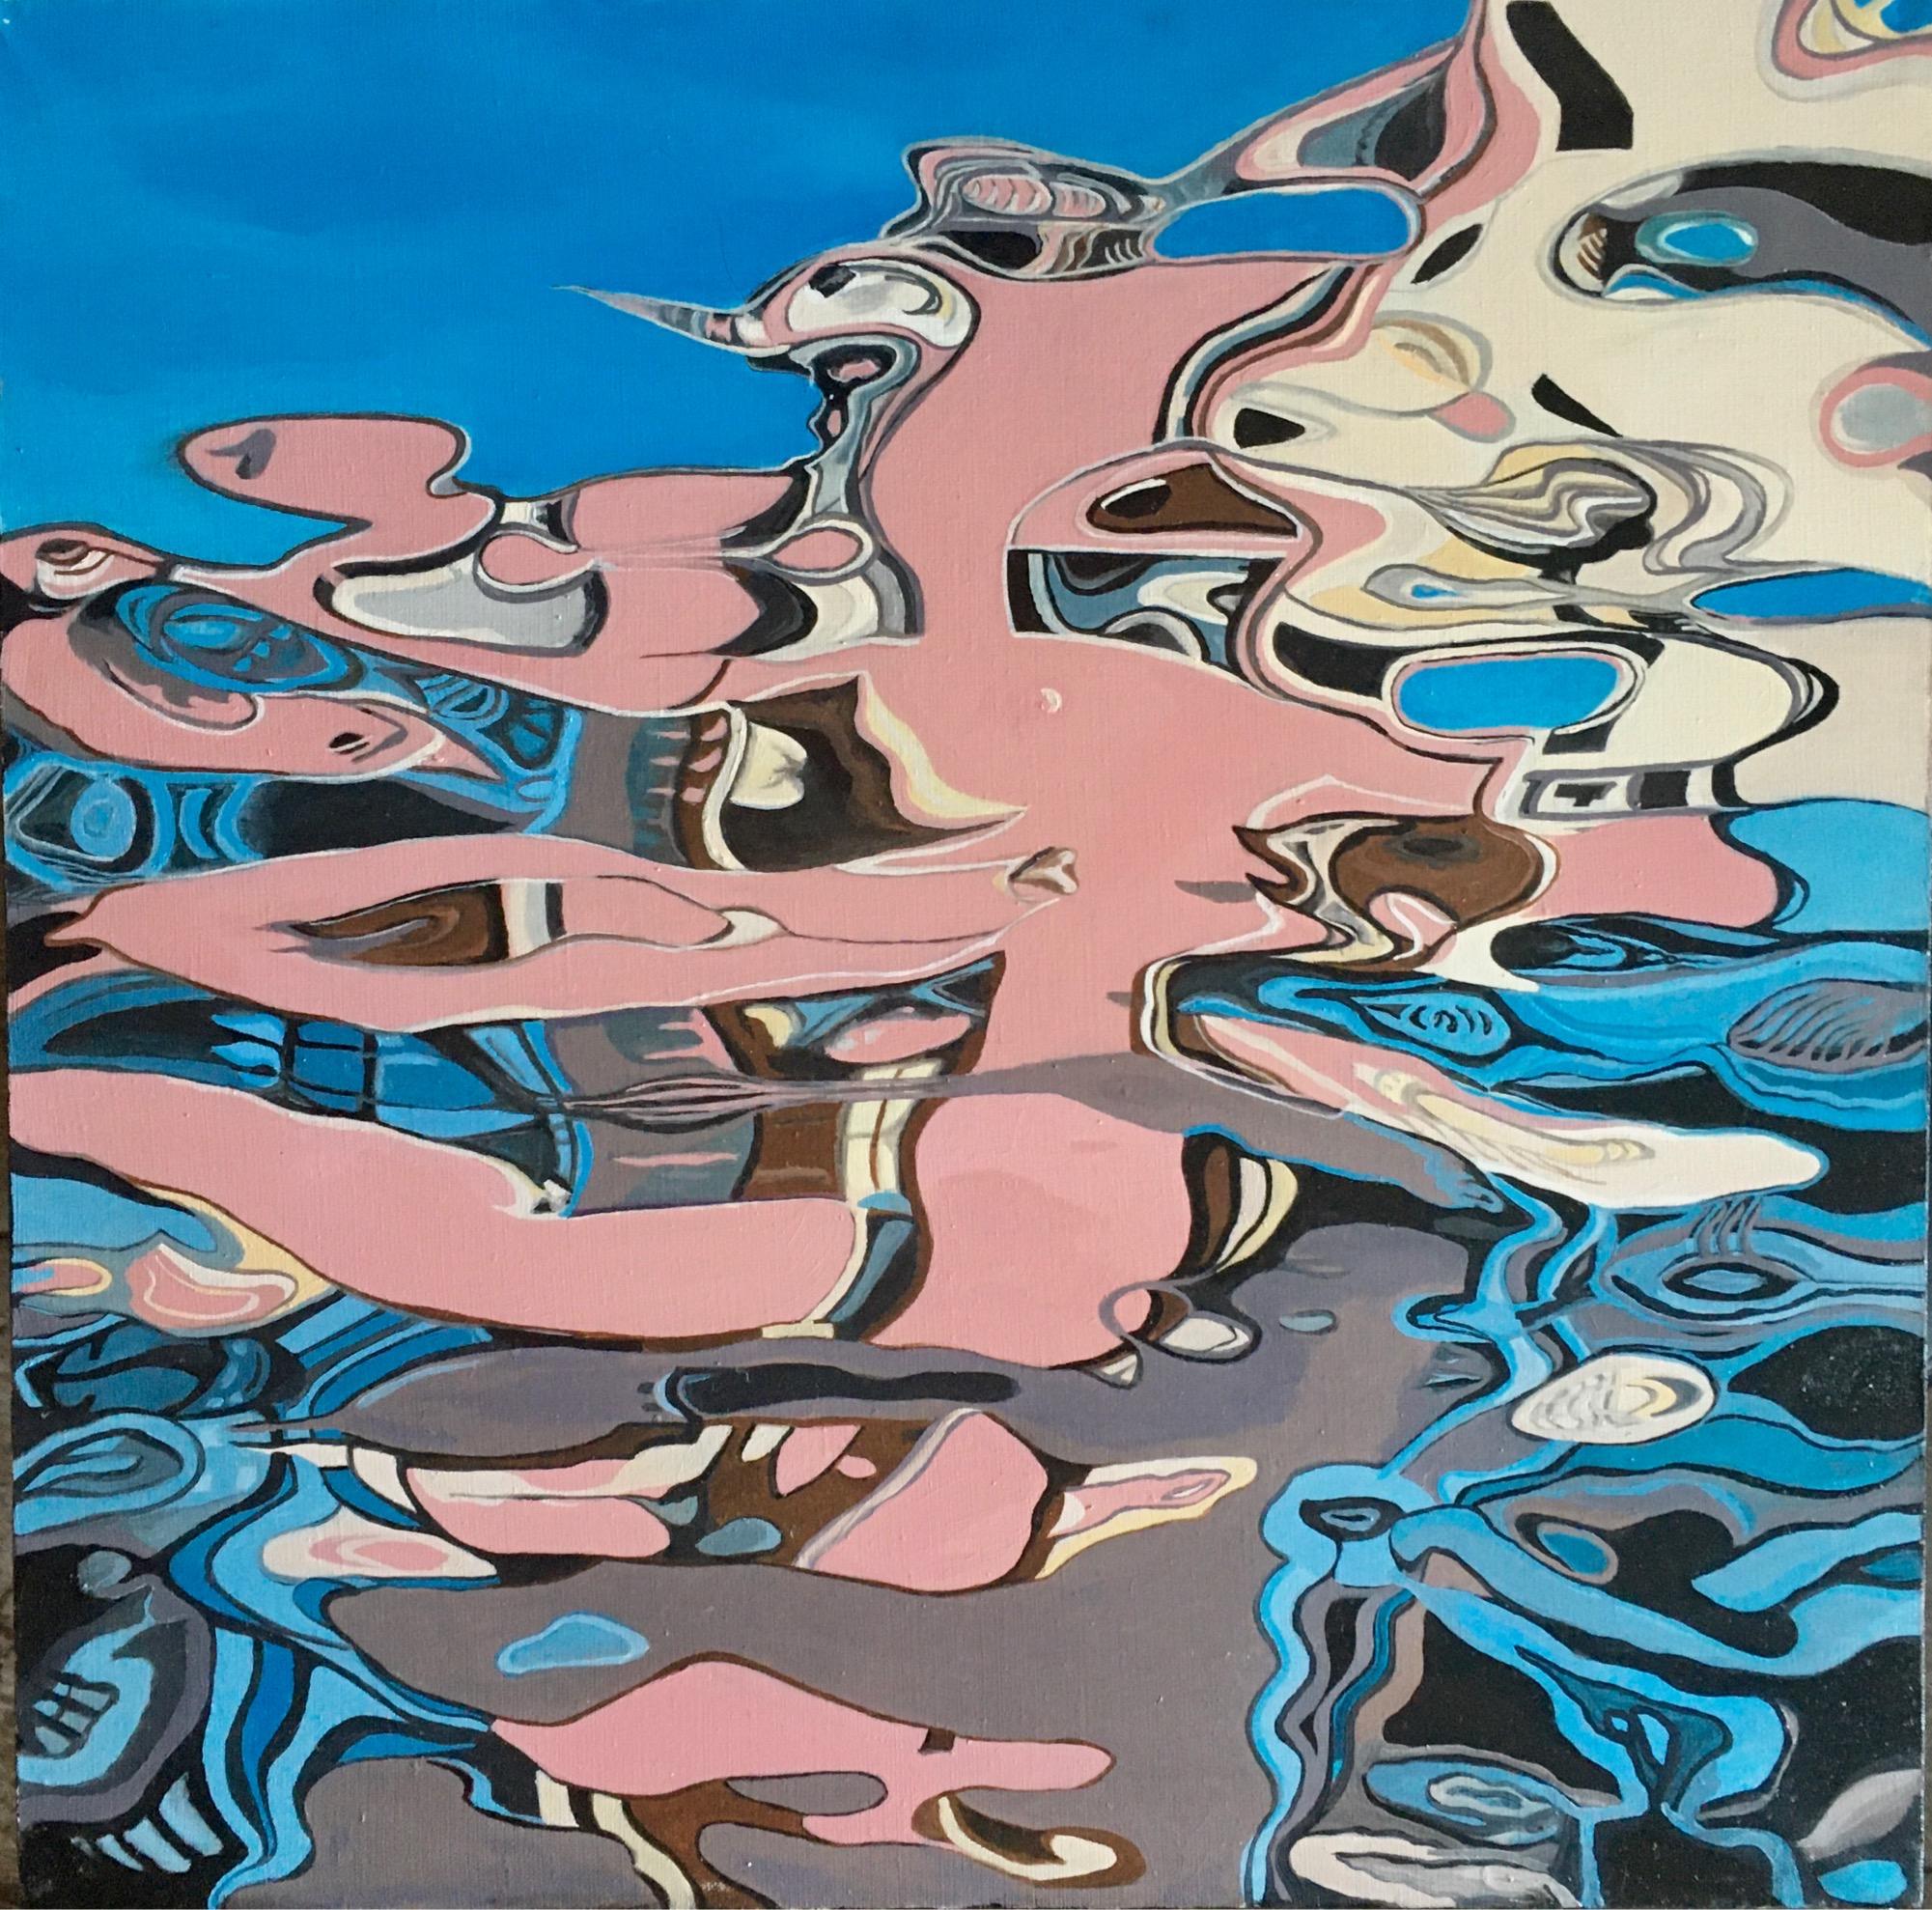 Peinture Reflection II abstraite, réalisée en bleu ciel, rose, beige, gris couleur